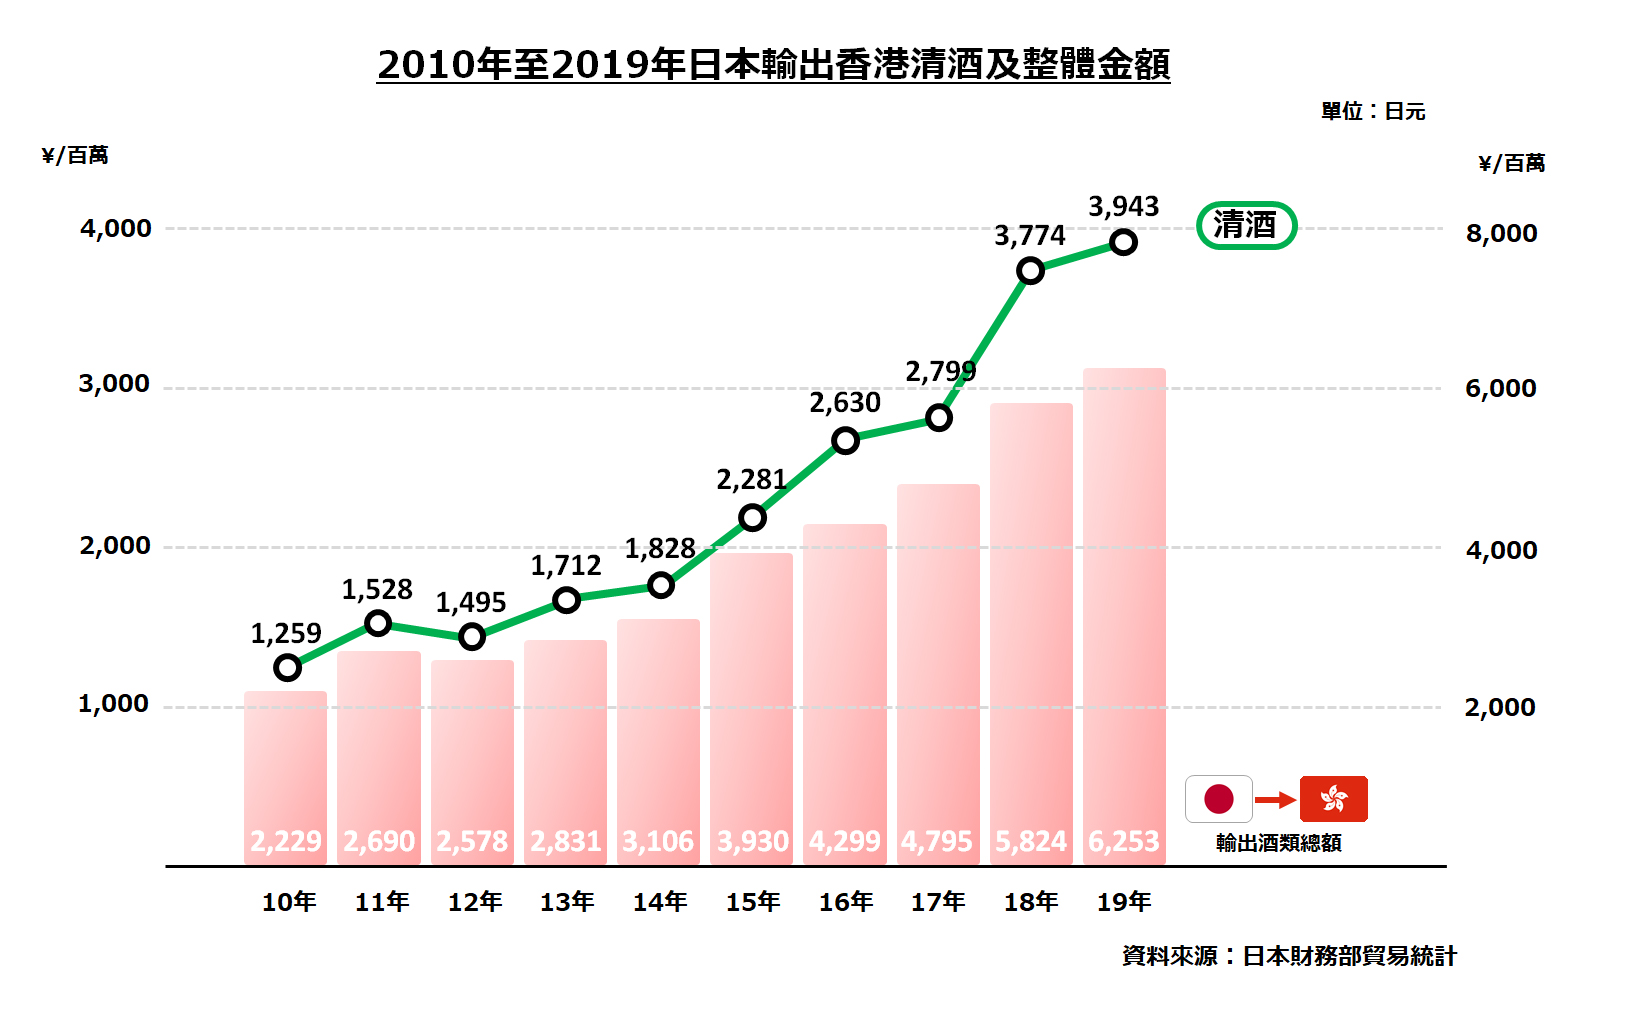 2010 年至 2019 年日本輸出香港清酒及整體金額